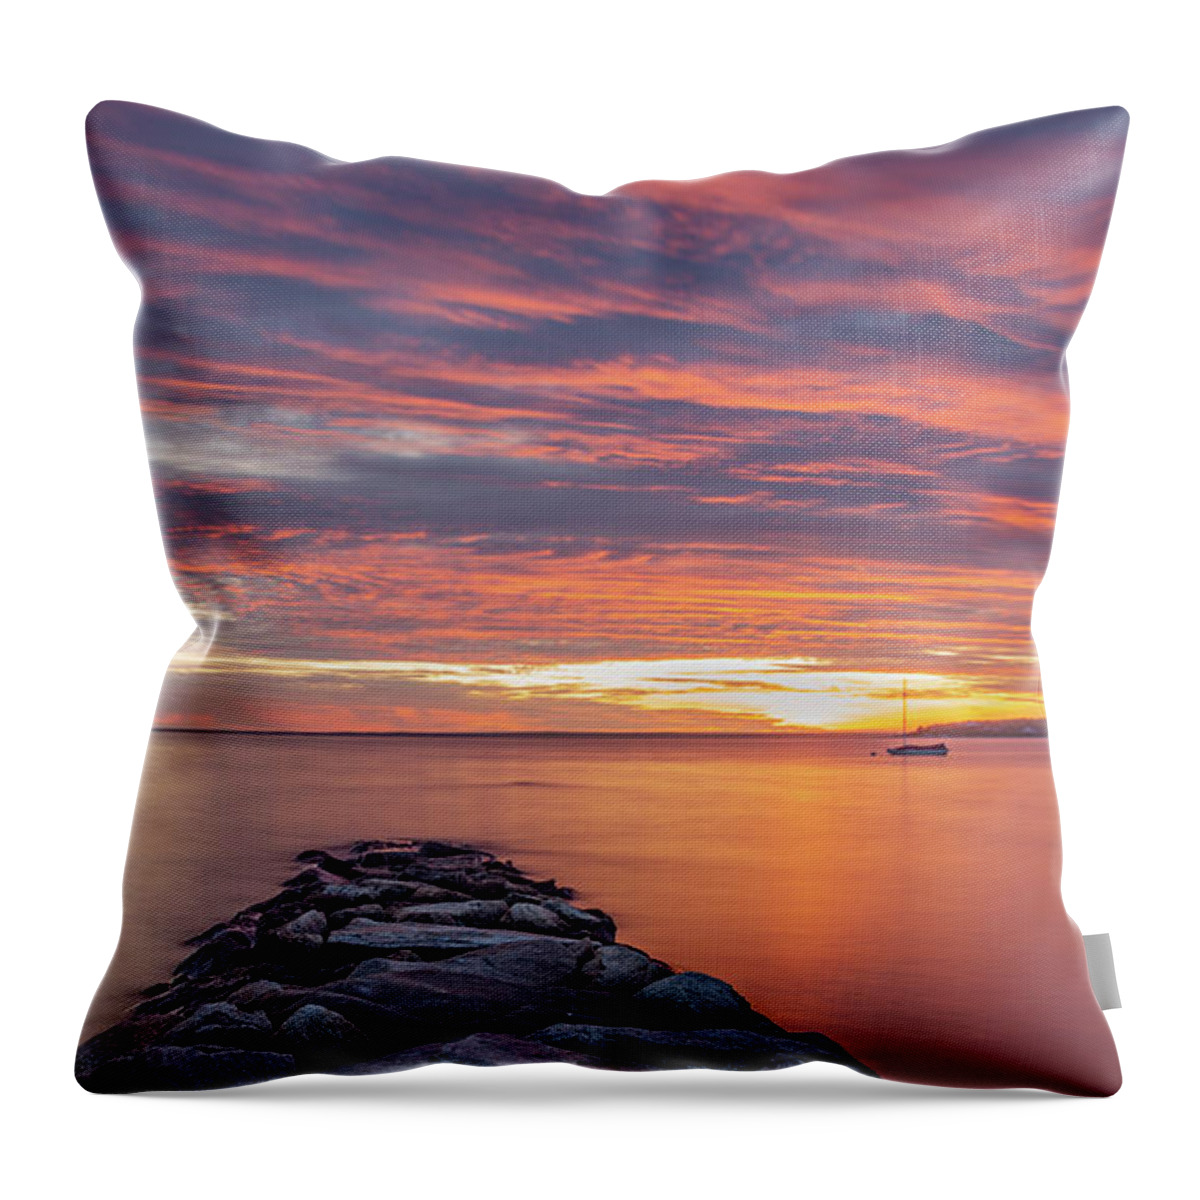 Megansett Throw Pillow featuring the photograph Megansett Bay by David Lee